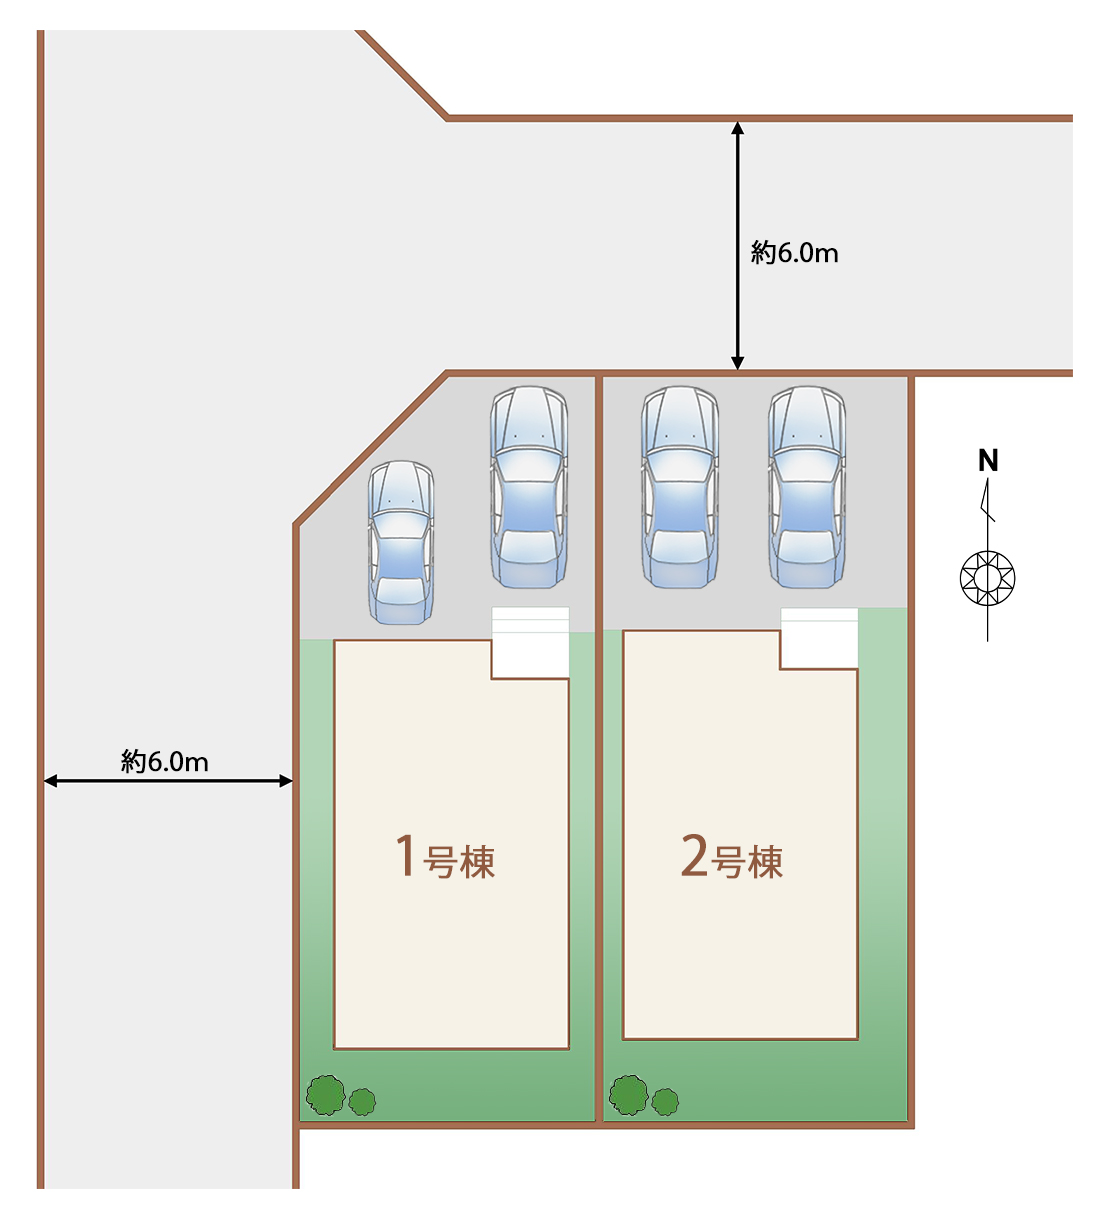 全体区画図です。並列2台駐車可能です。